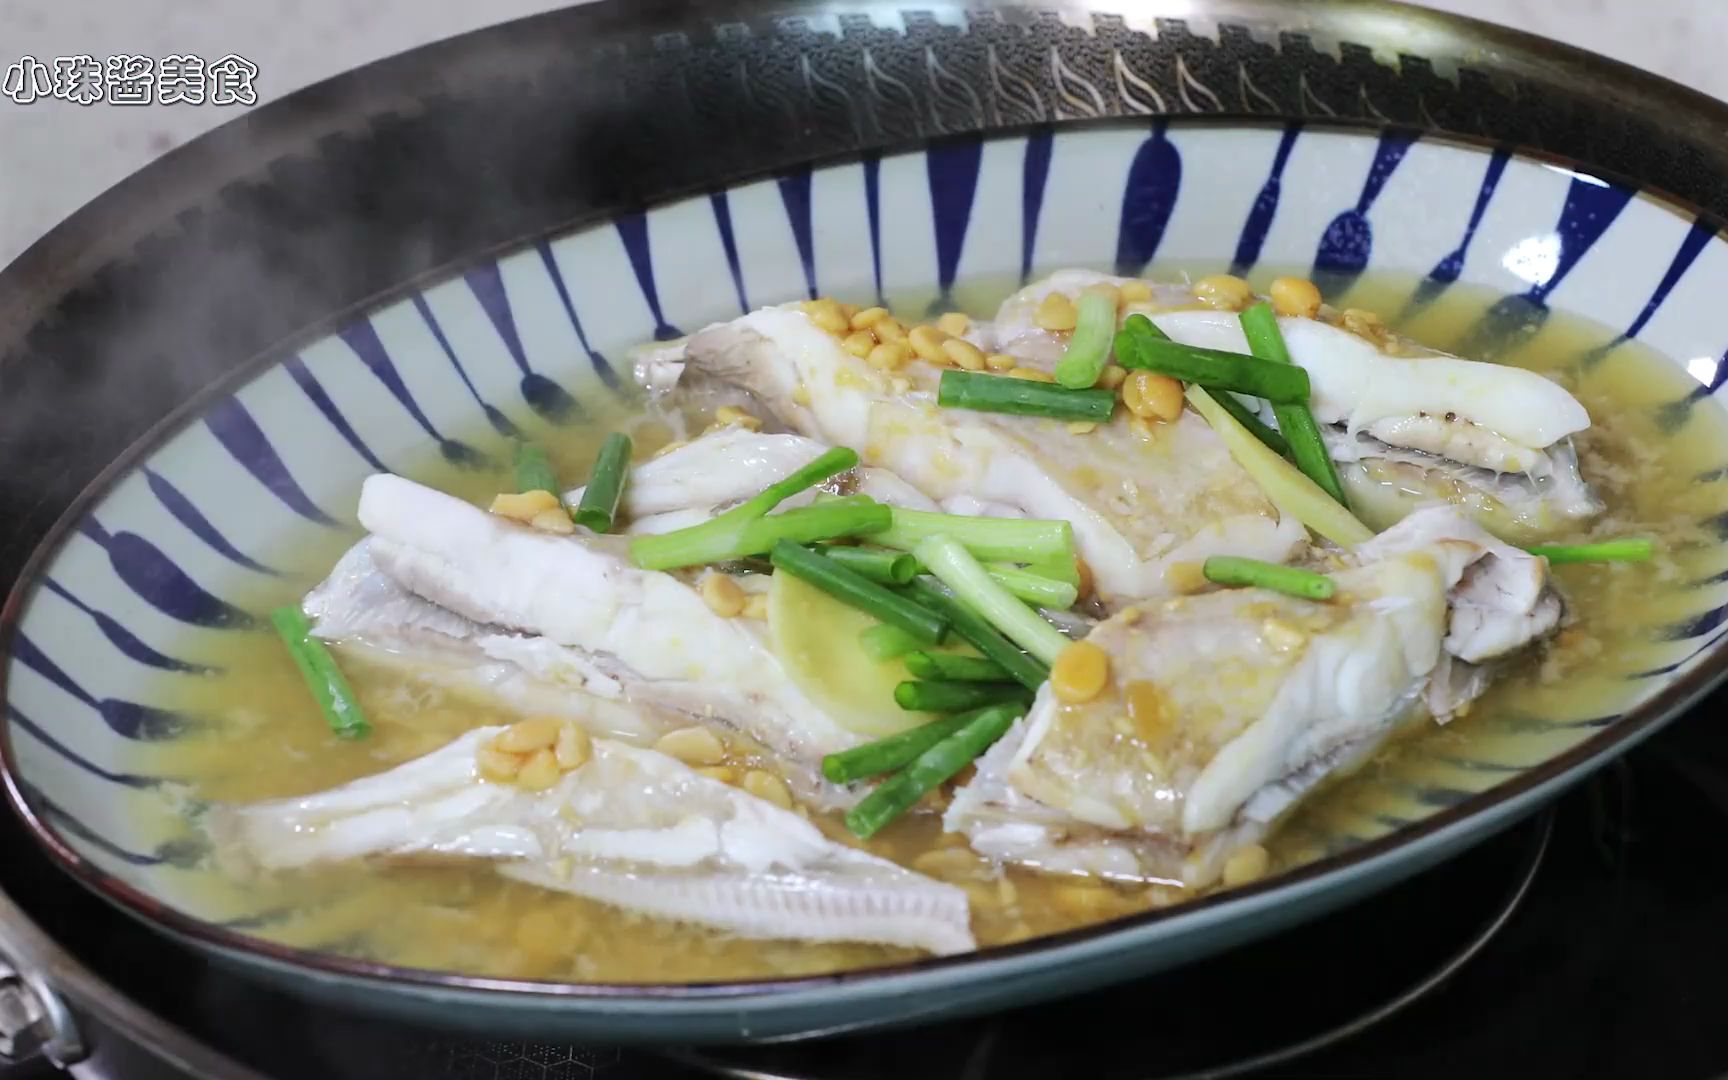 黄豆酱蒸剥皮鱼很有风味的清蒸剥皮鱼做法,家常海鲜做法就是简单